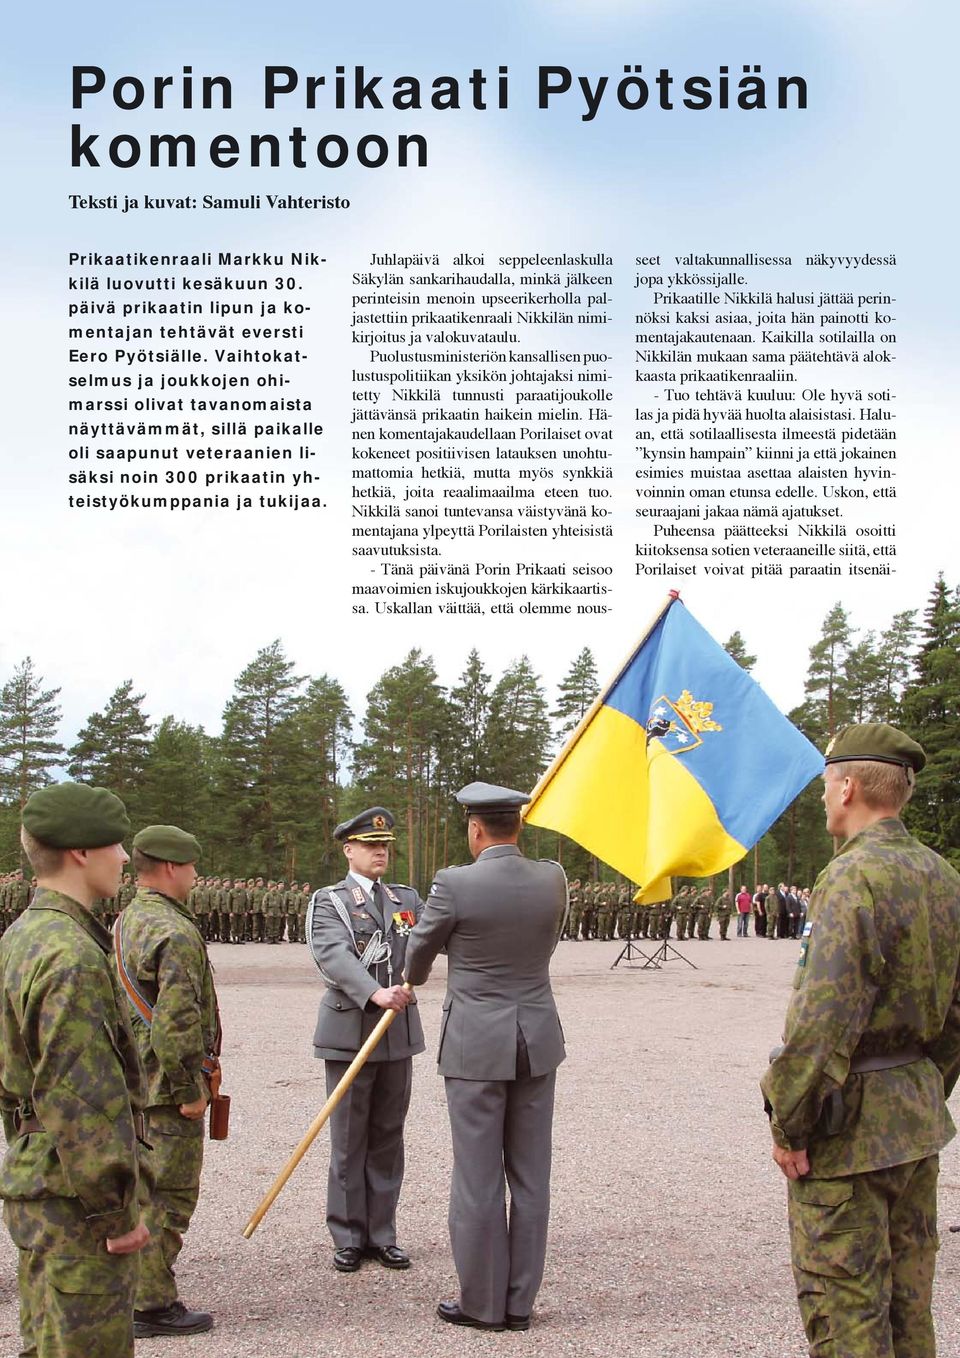 Juhlapäivä alkoi seppeleenlaskulla Säkylän sankarihaudalla, minkä jälkeen perinteisin menoin upseerikerholla paljastettiin prikaatikenraali Nikkilän nimikirjoitus ja valokuvataulu.